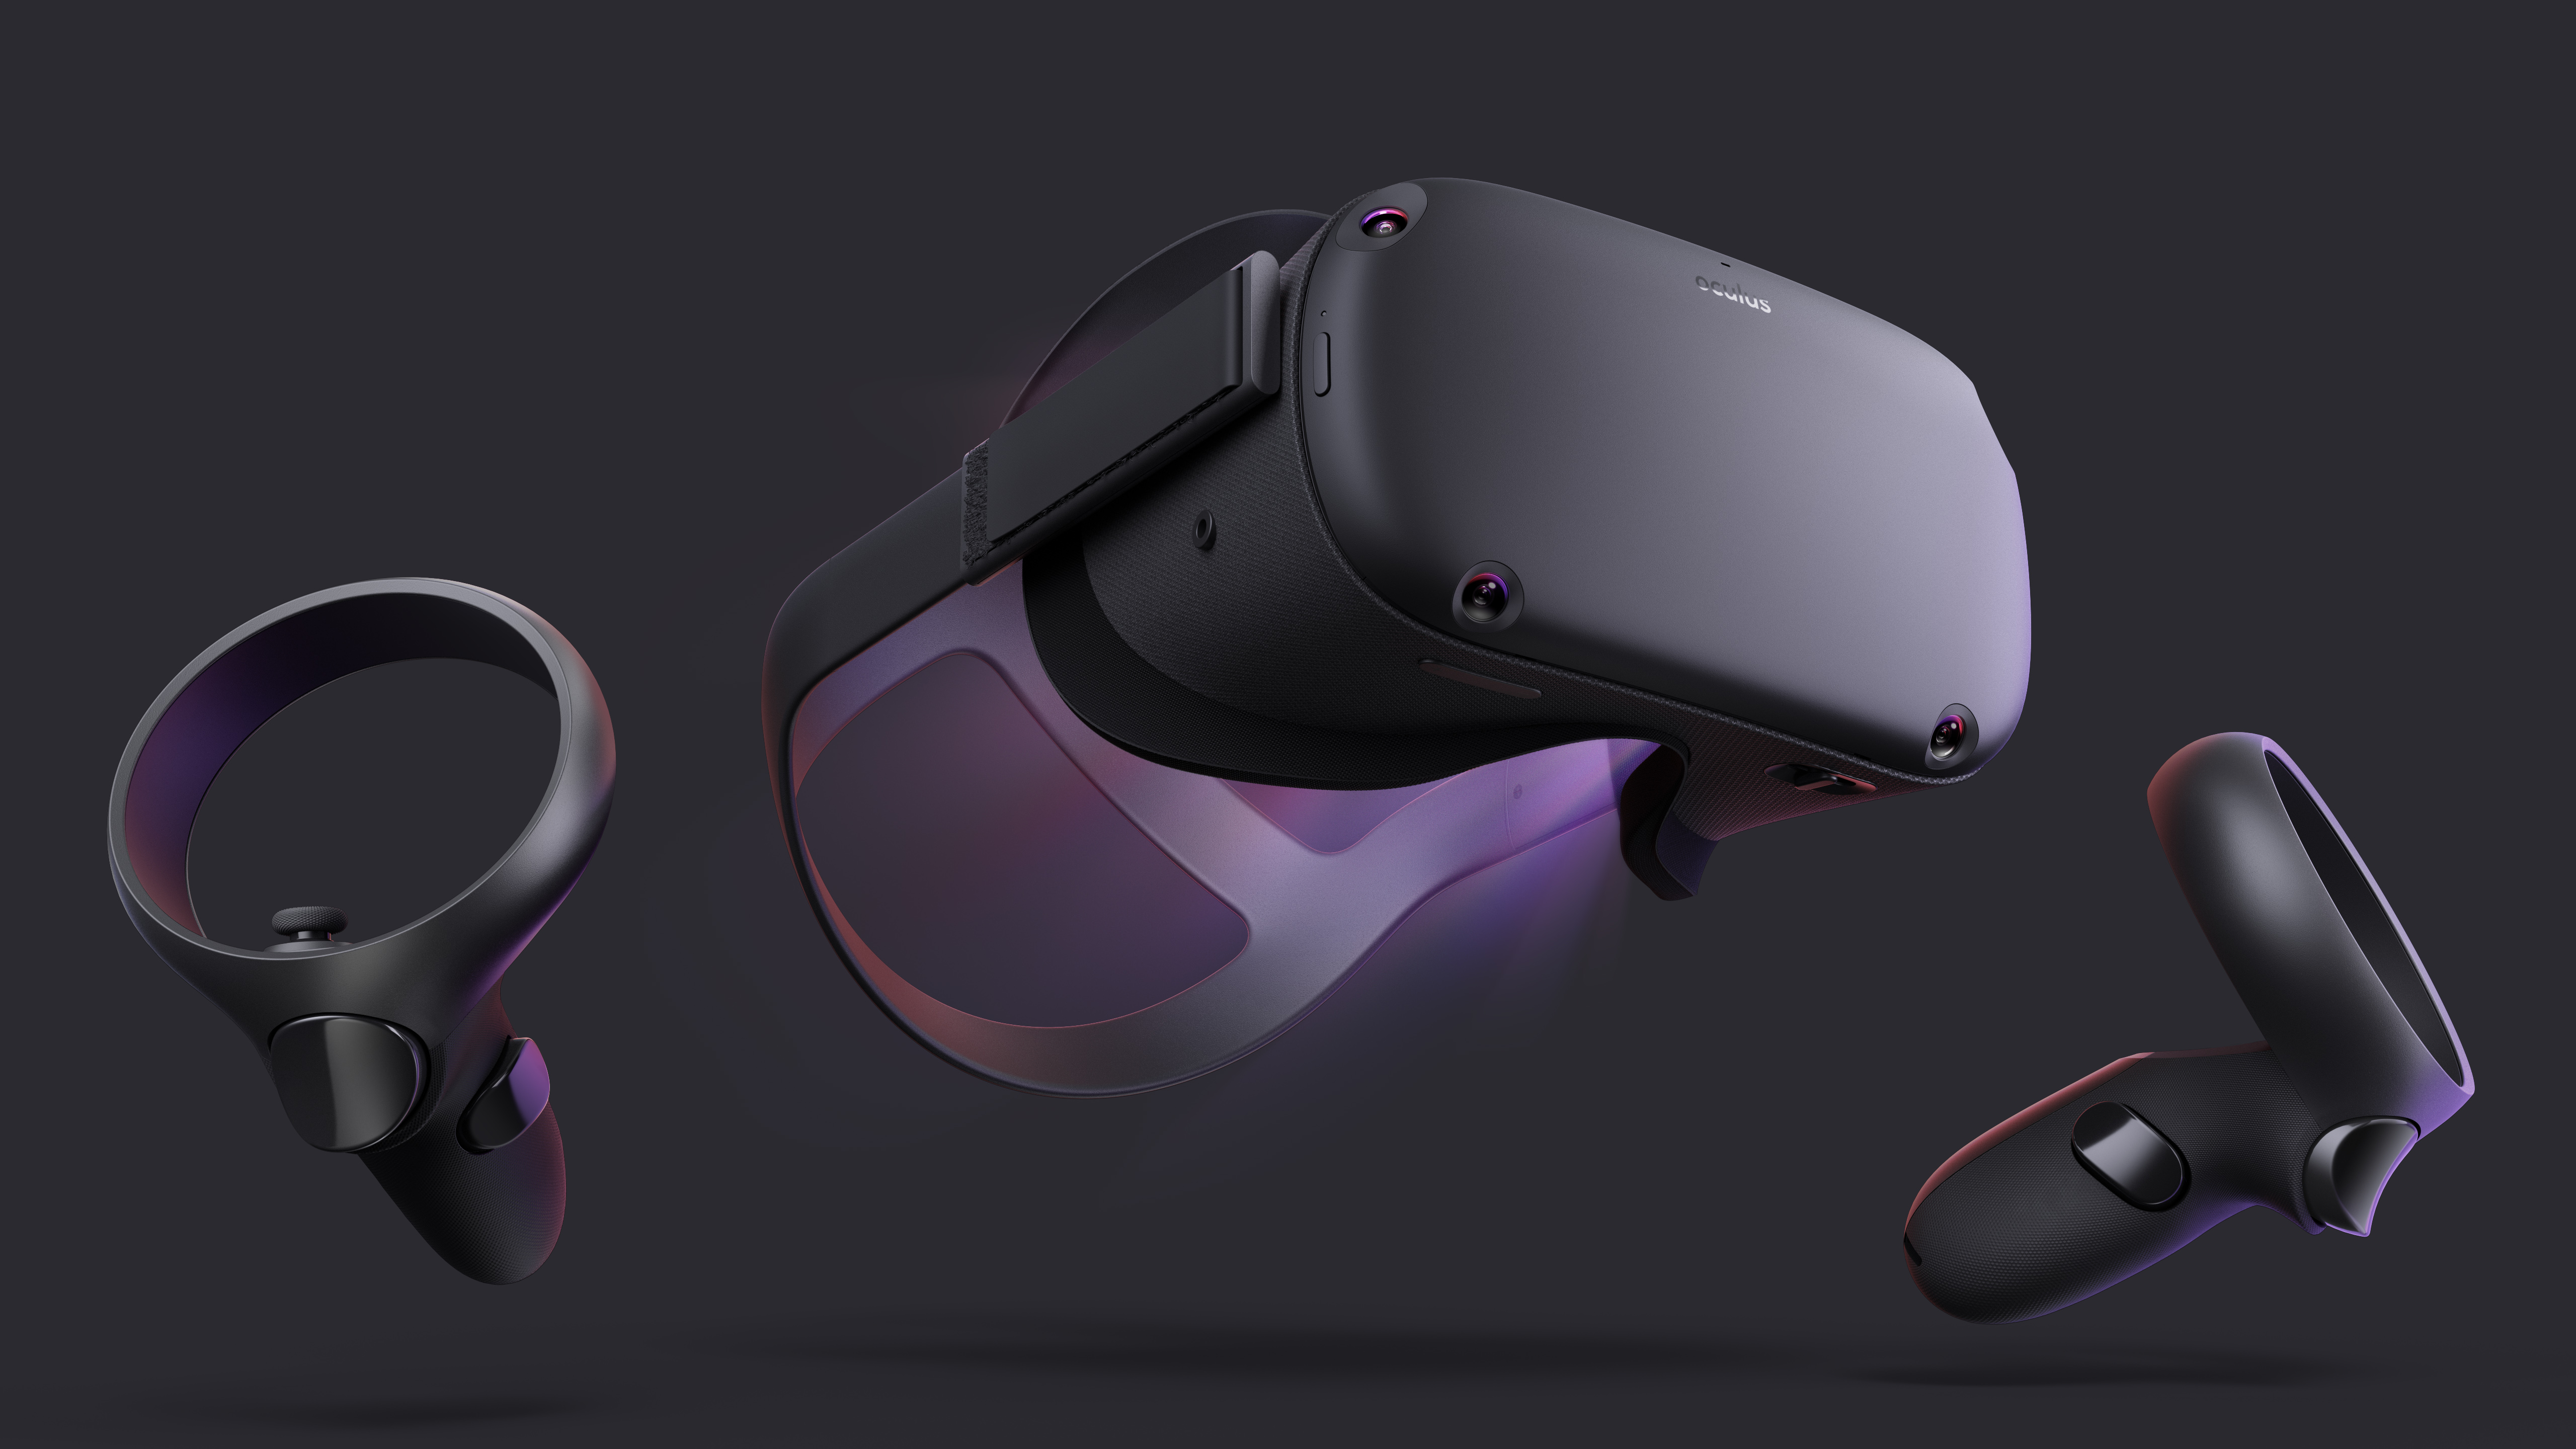 Dette er Oculus Quest - lanseres våren 2019